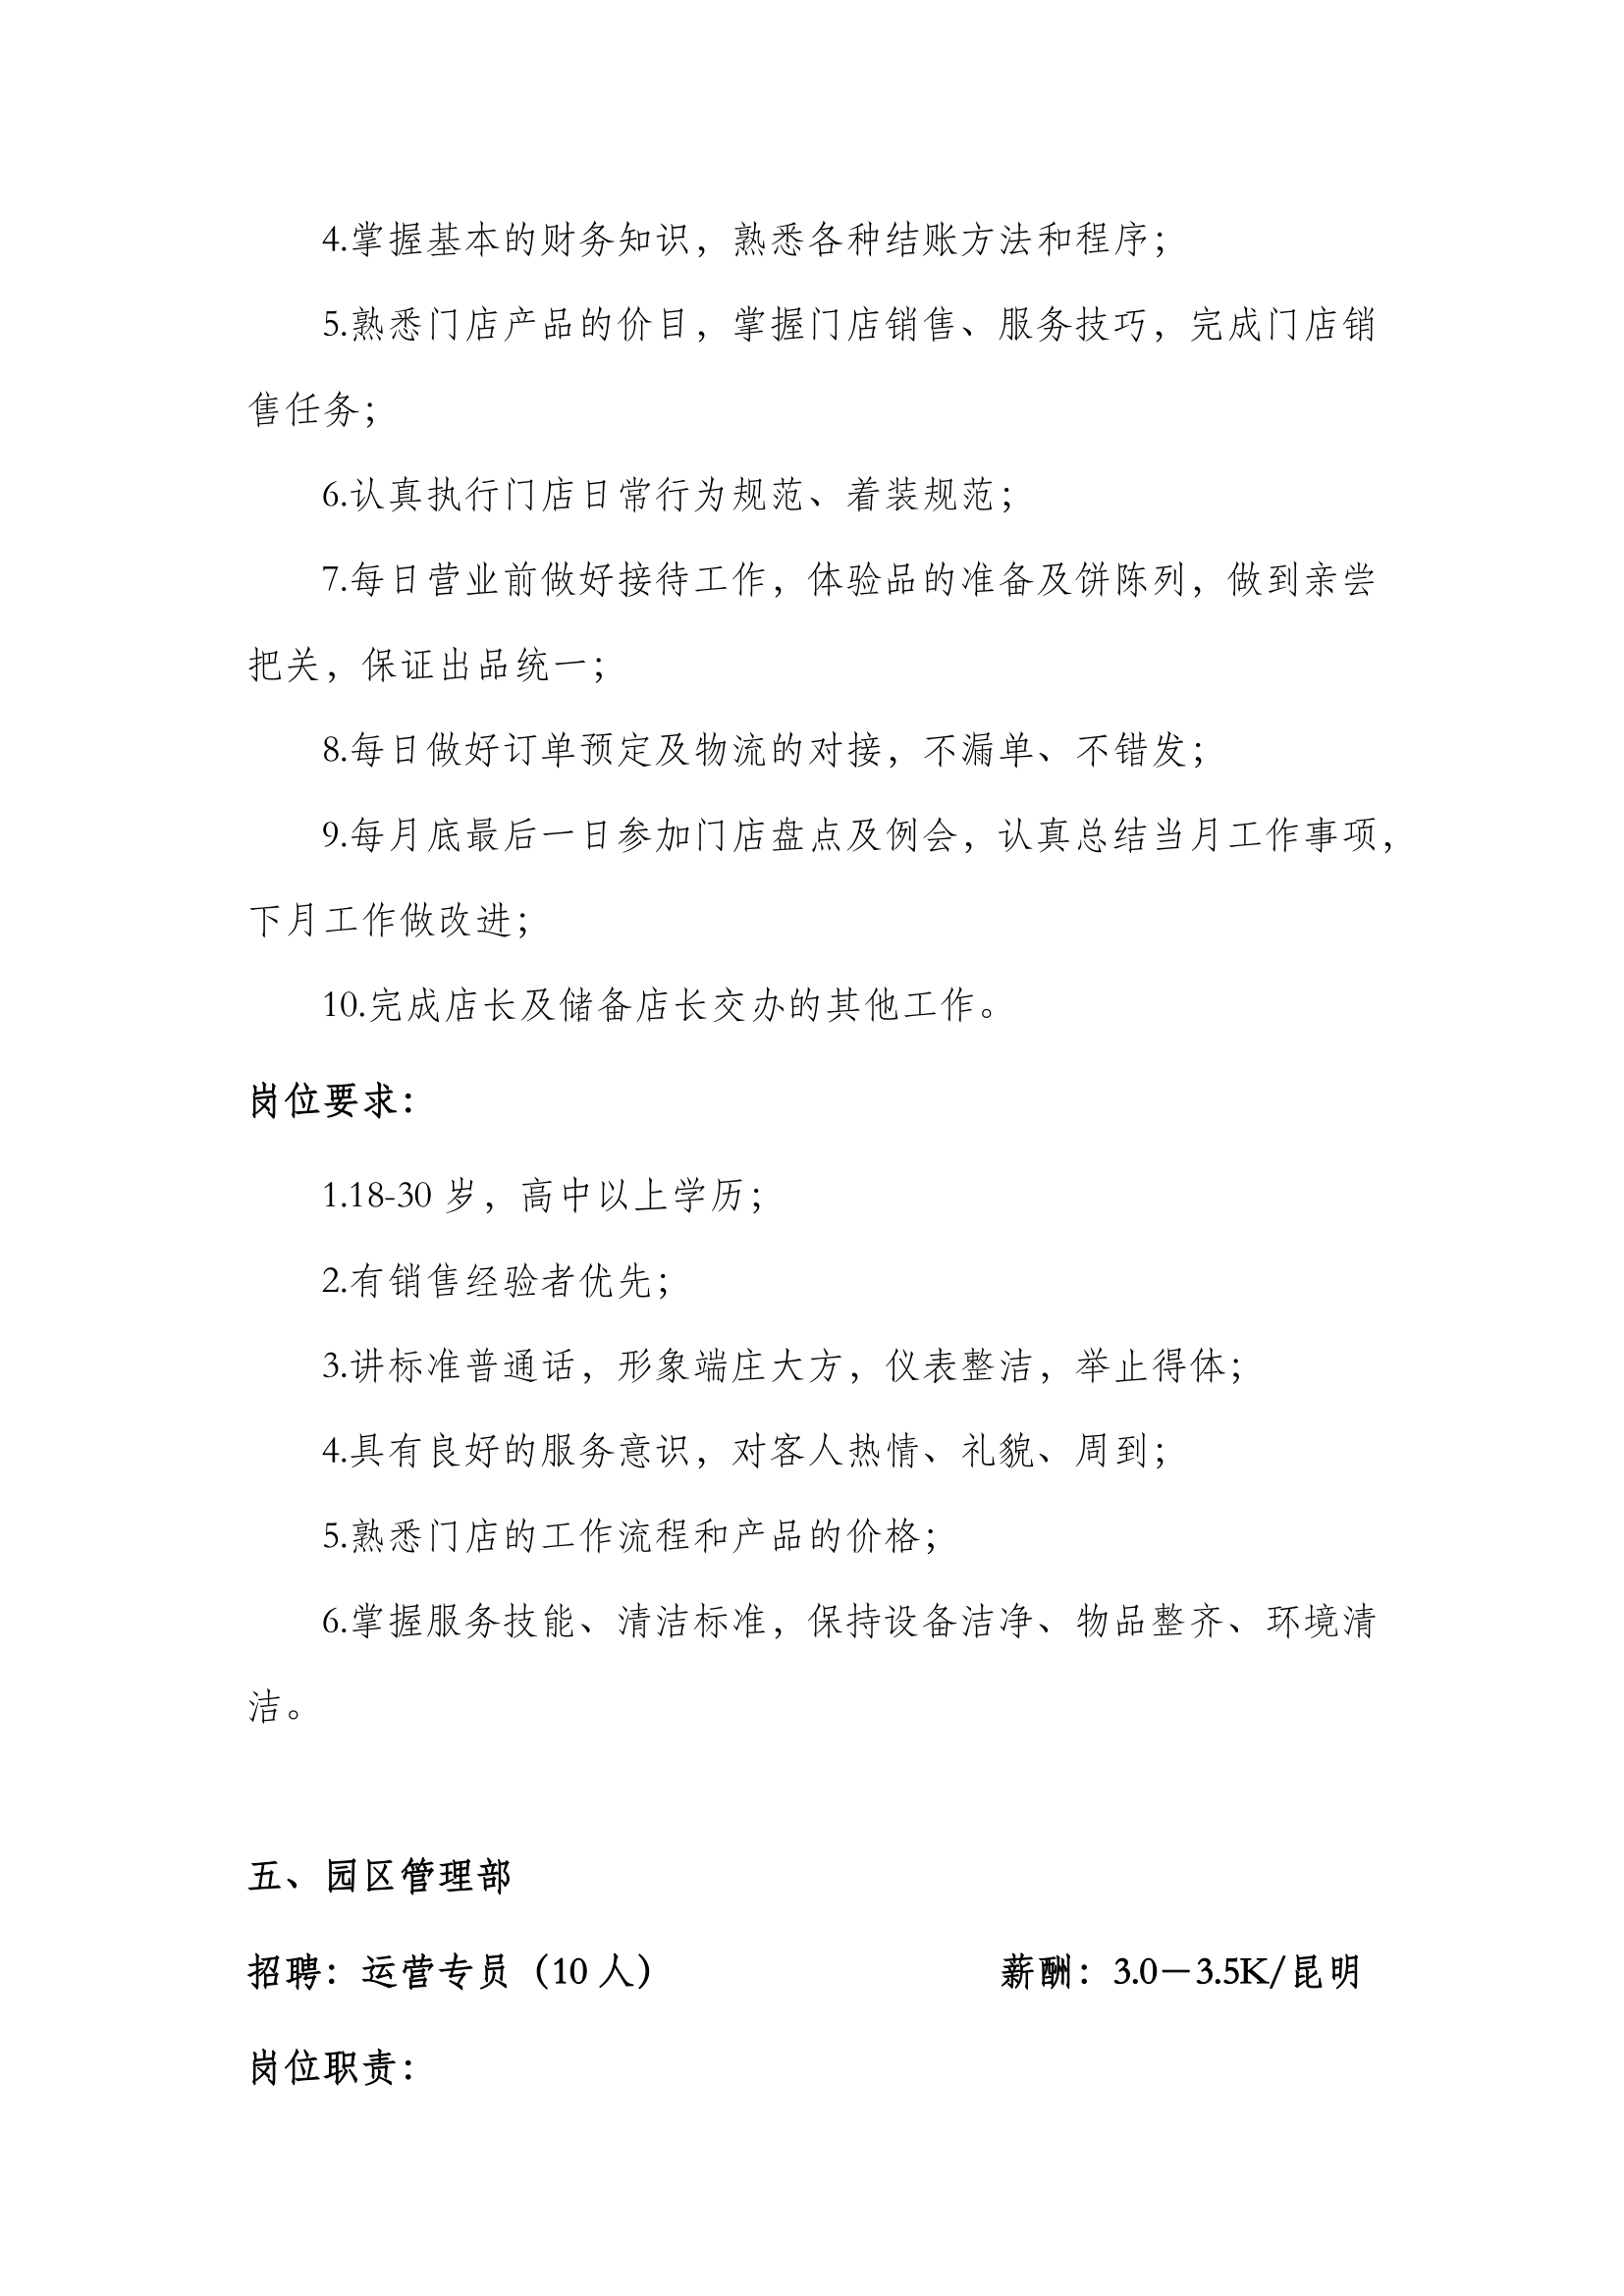 2021年4月花之城招聘簡章(2)-4.png